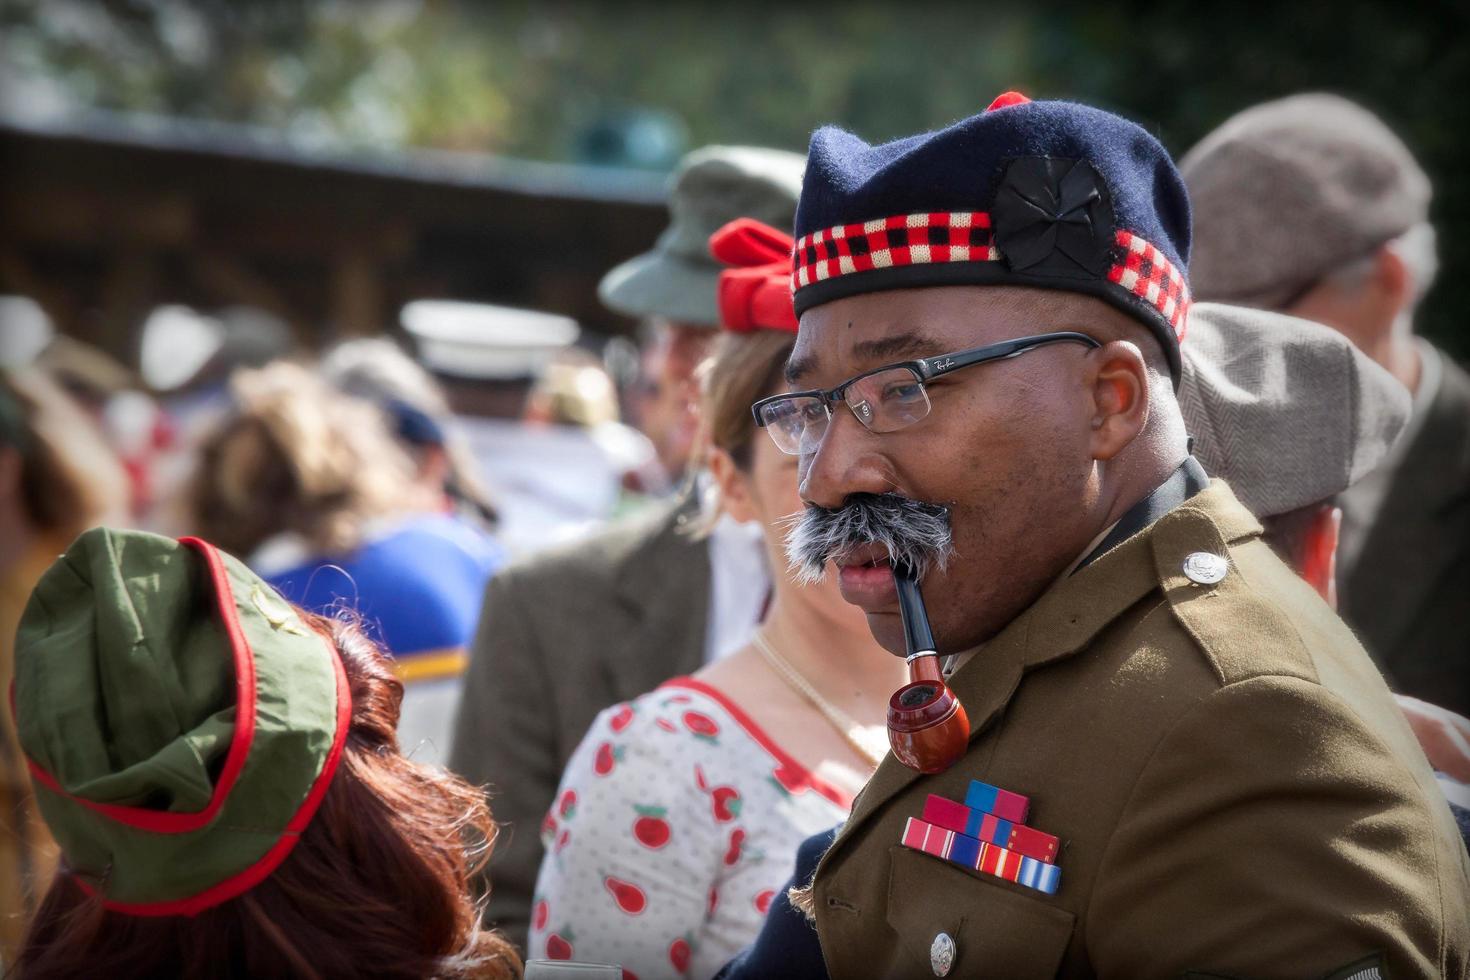 goodwood, west sussex, Storbritannien, 2012. soldat njuter av sin pipa vid återupplivandet av Goodwood foto